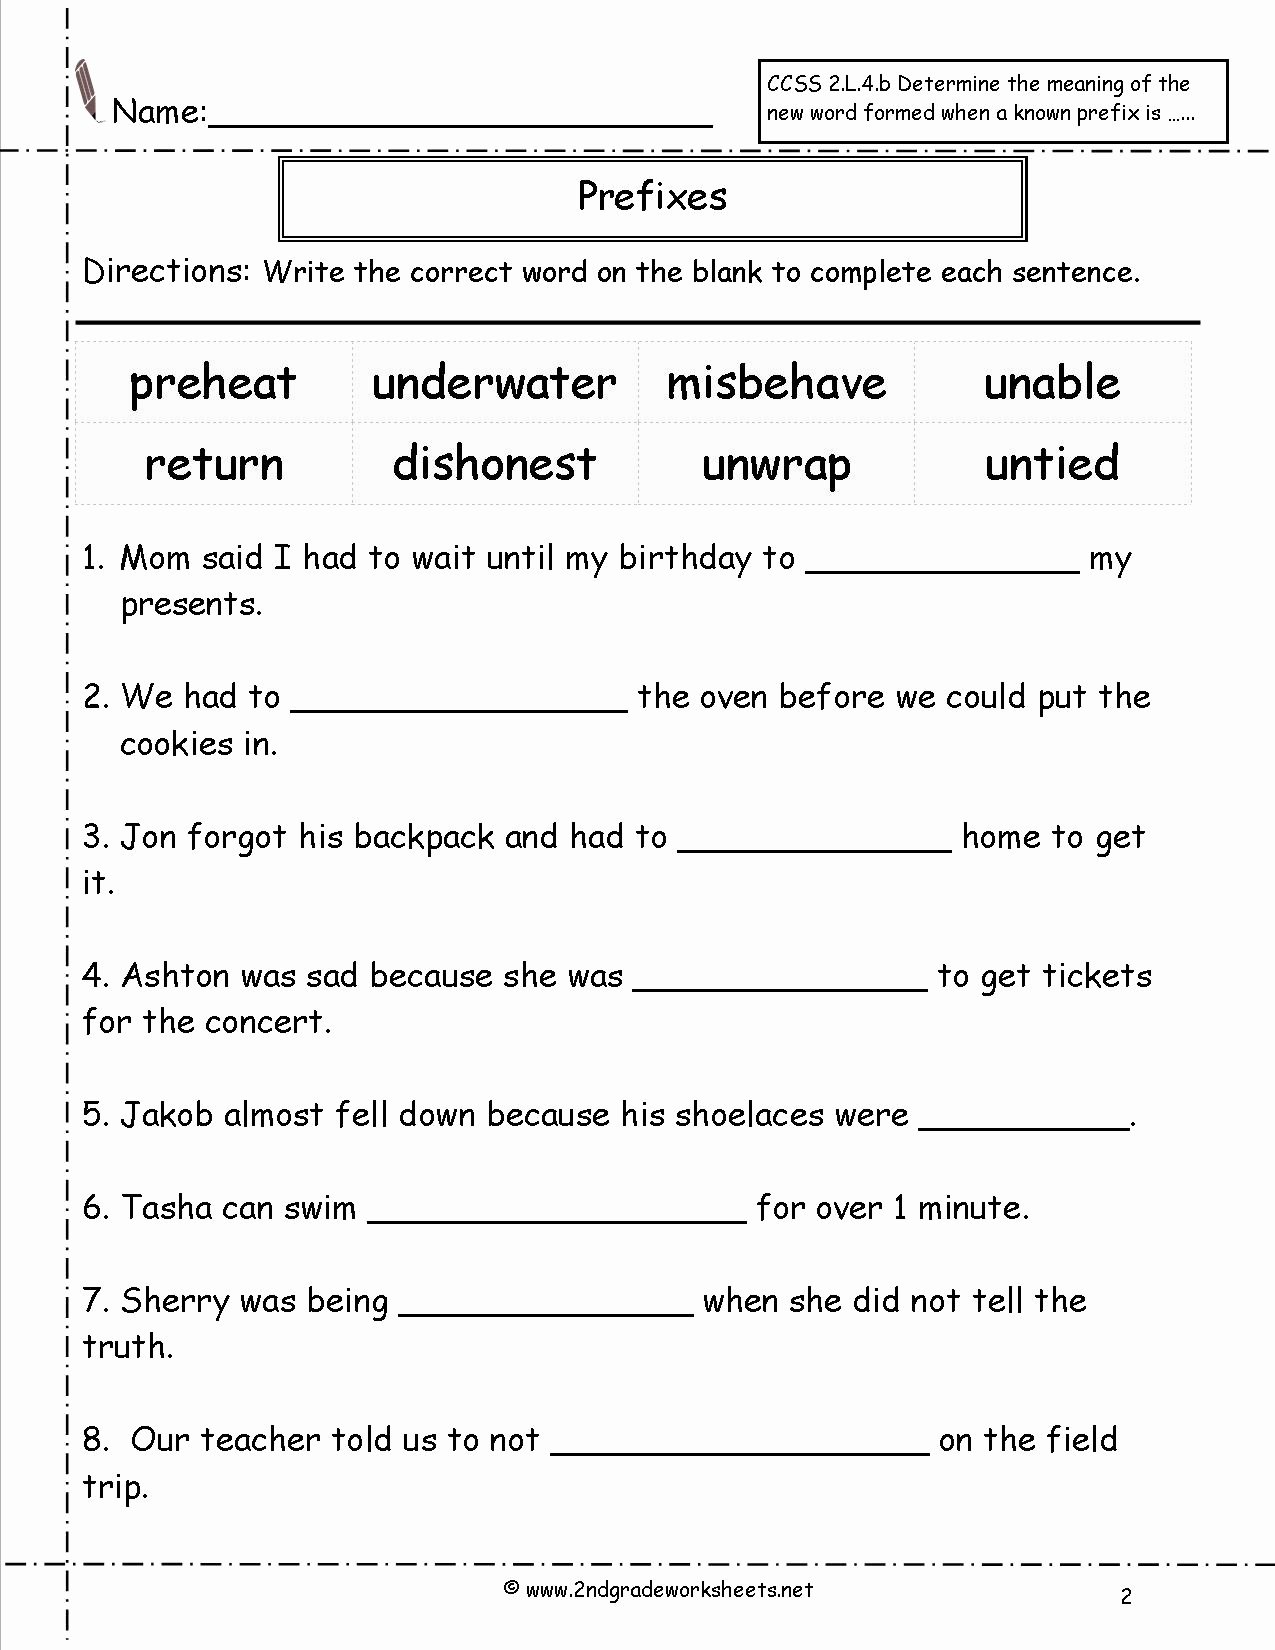 Prefixes Worksheet 2nd Grade Elegant Second Grade Prefixes Worksheets